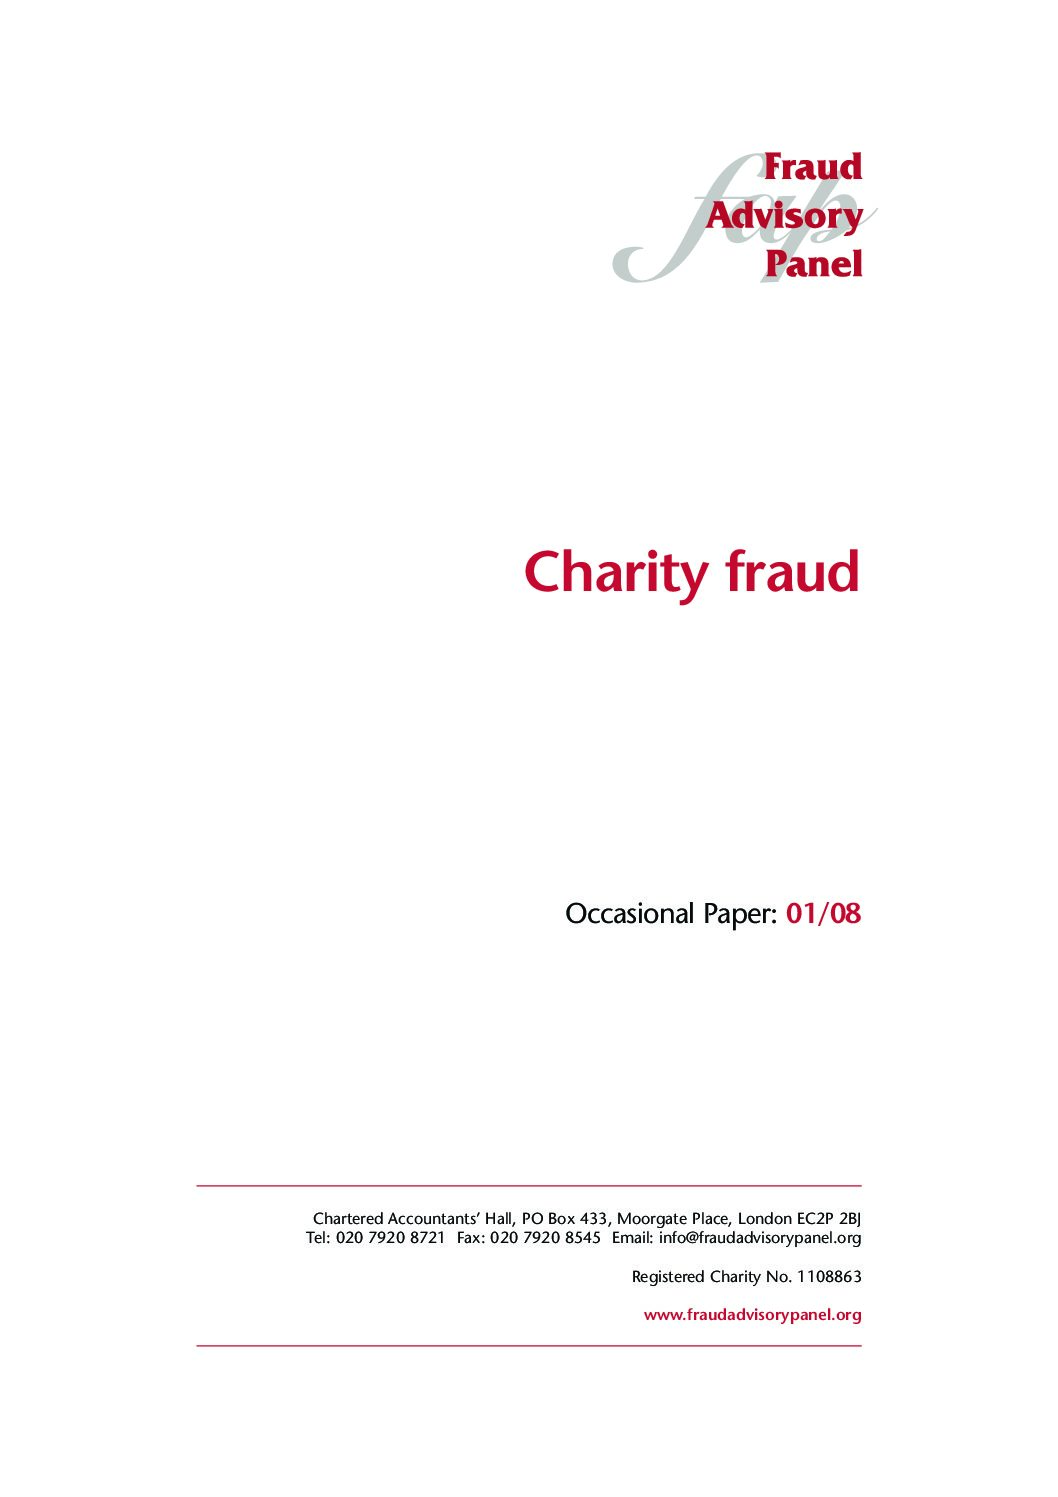 Charity fraud September08 document cover